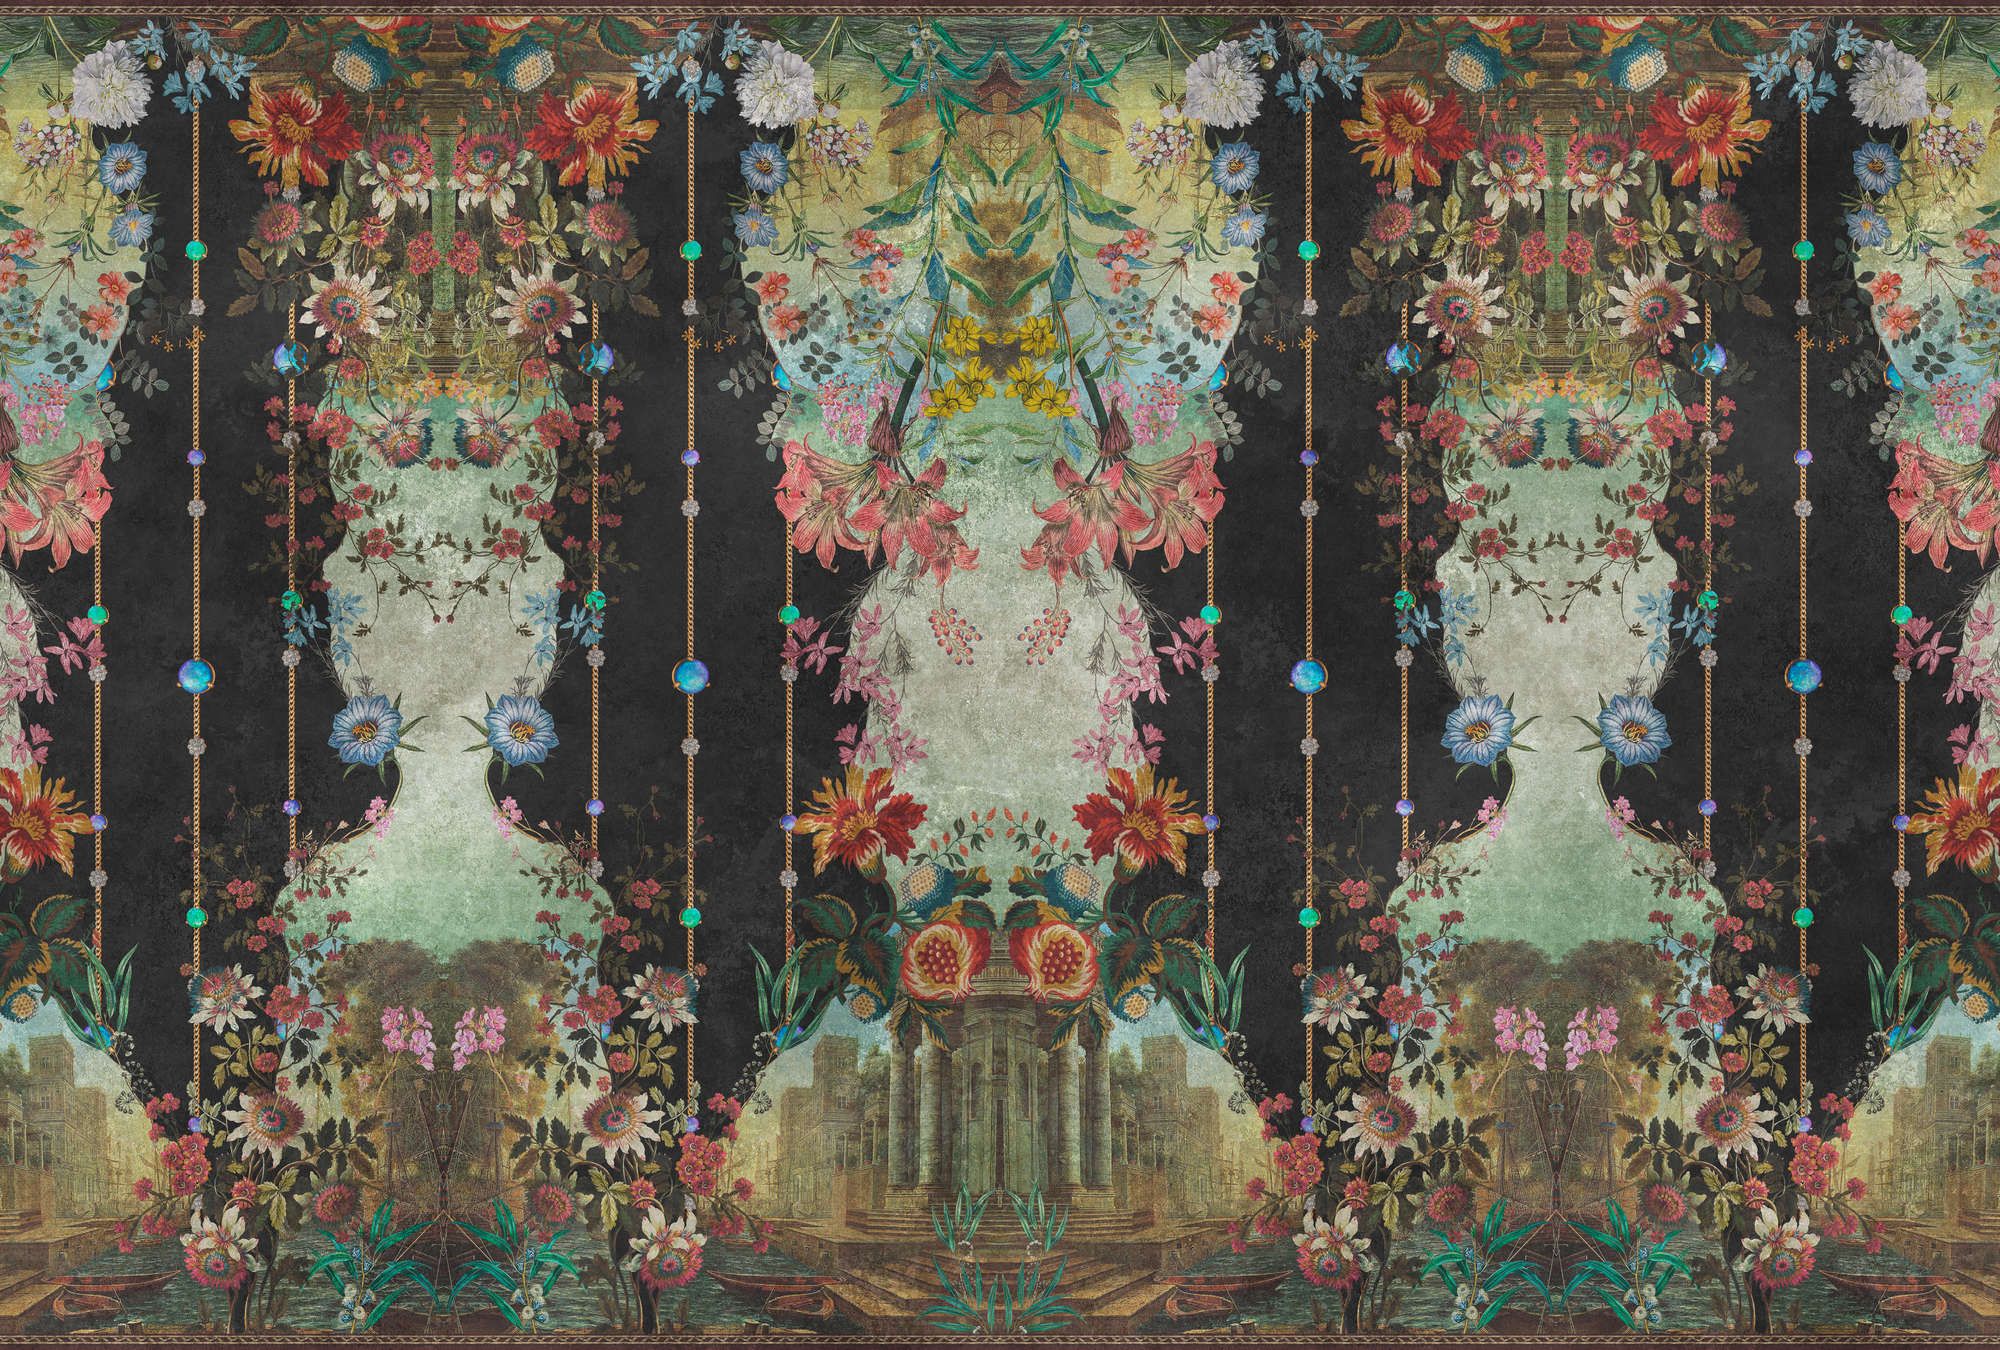             Papel pintado »ophelia« - Revestimiento ornamental con motivo floral sobre textura de escayola vintage - Material no tejido de calidad superior, liso y ligeramente brillante.
        